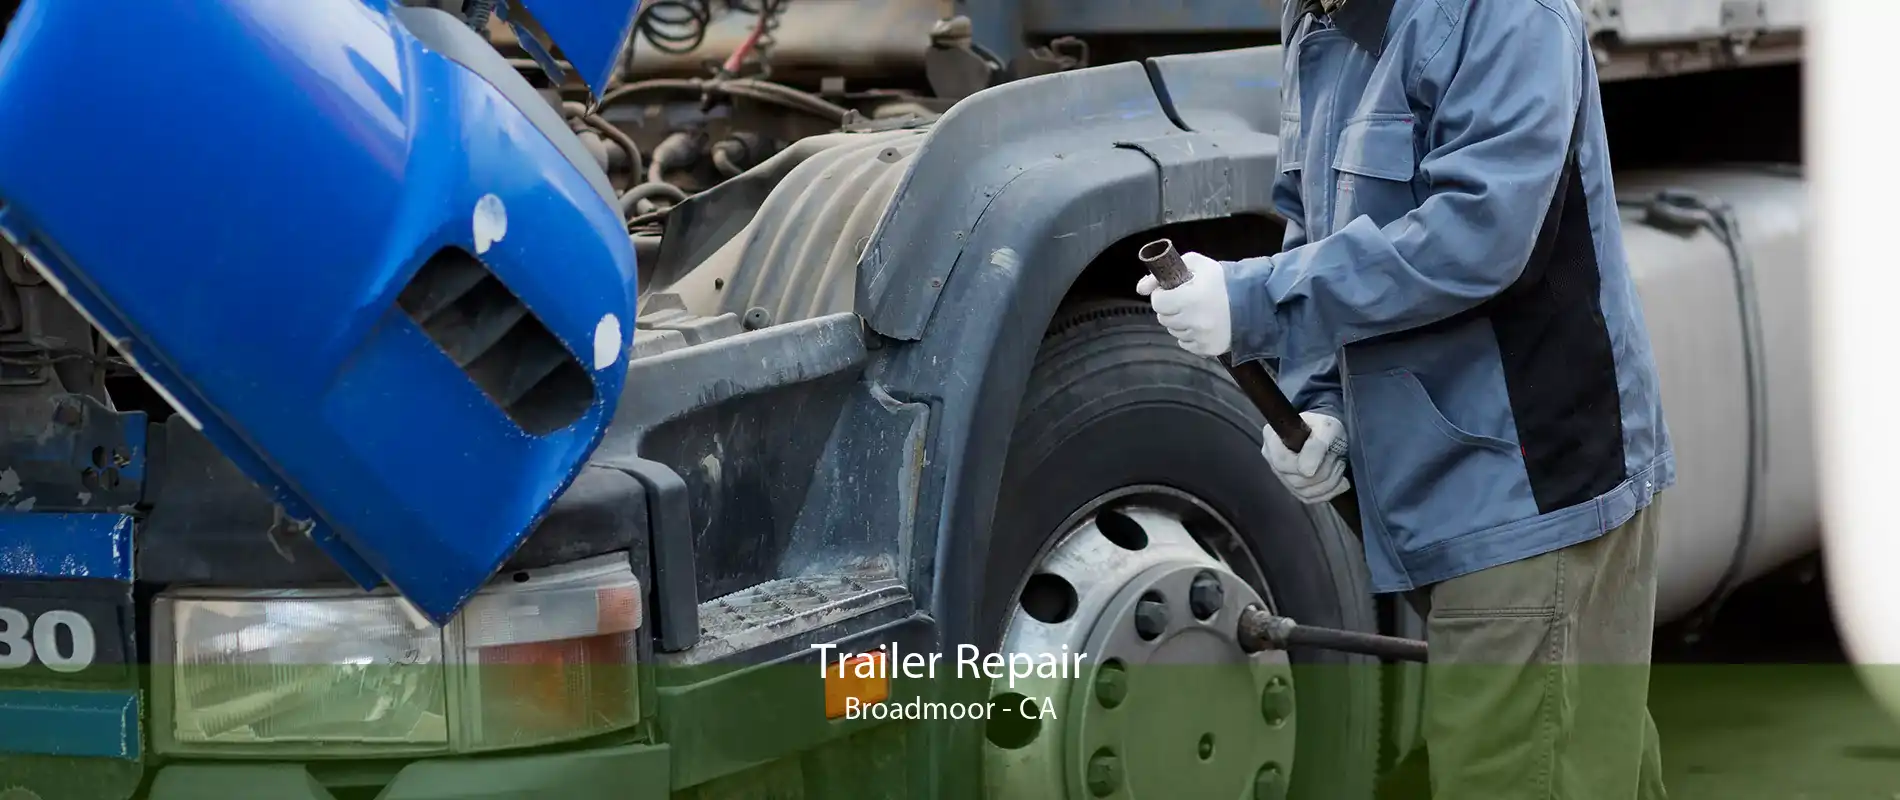 Trailer Repair Broadmoor - CA